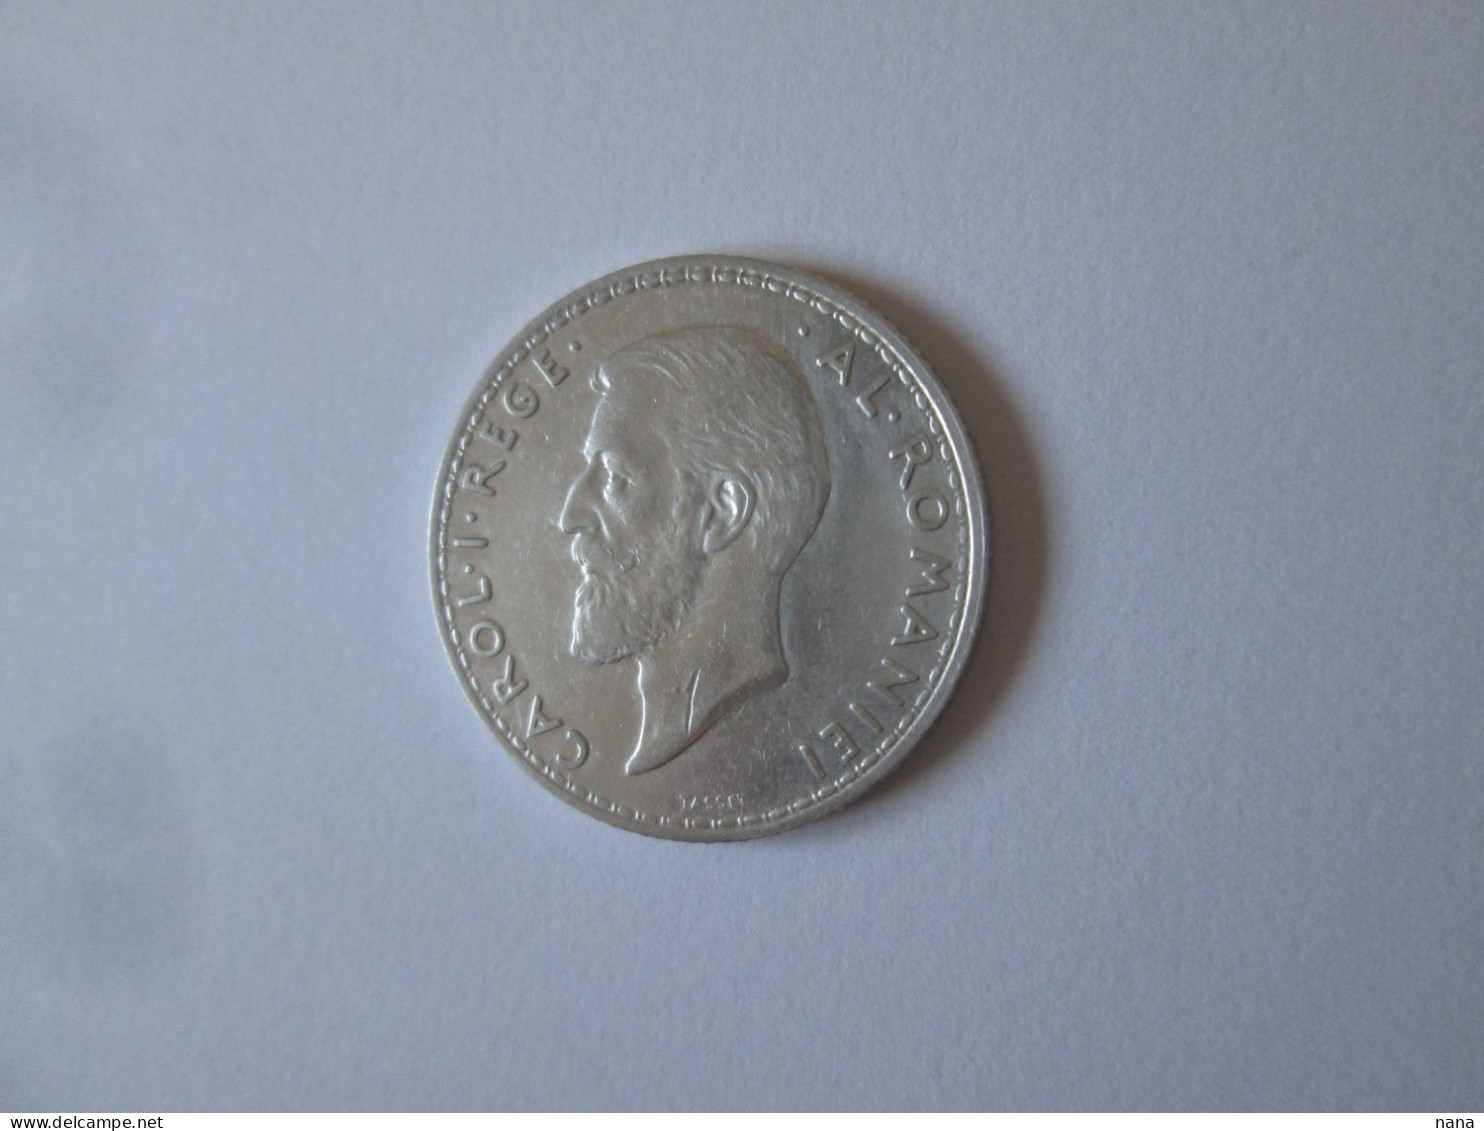 Roumanie 1 Leu 1914 Argent Tres Belle Piece/Romania 1 Leu 1914 Silver Very Nice Coin - Rumania